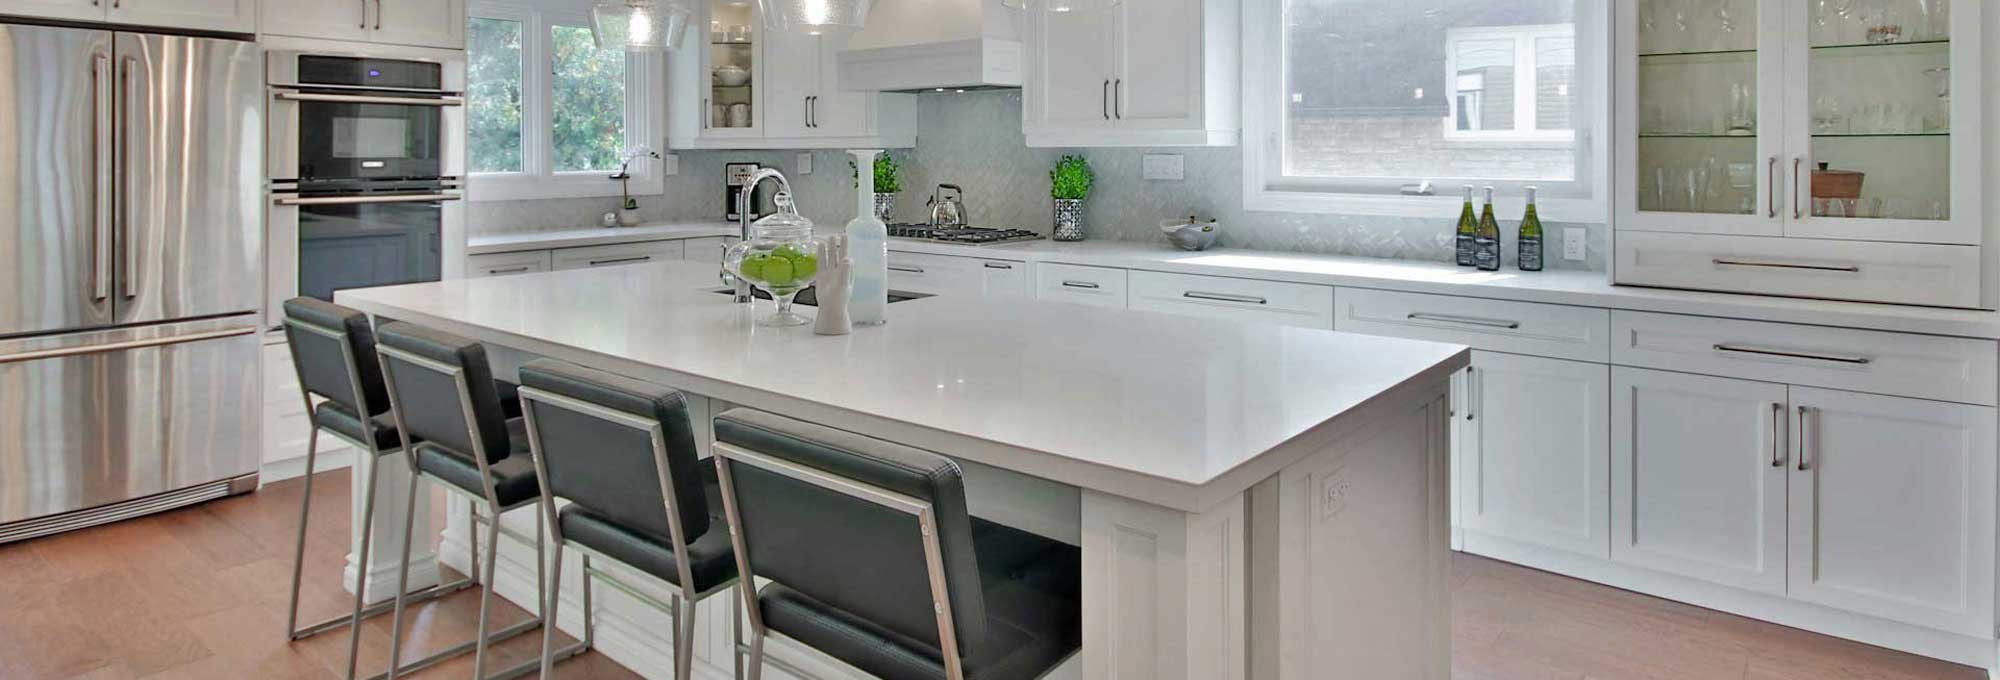 Beautiful modern kitchen countertops